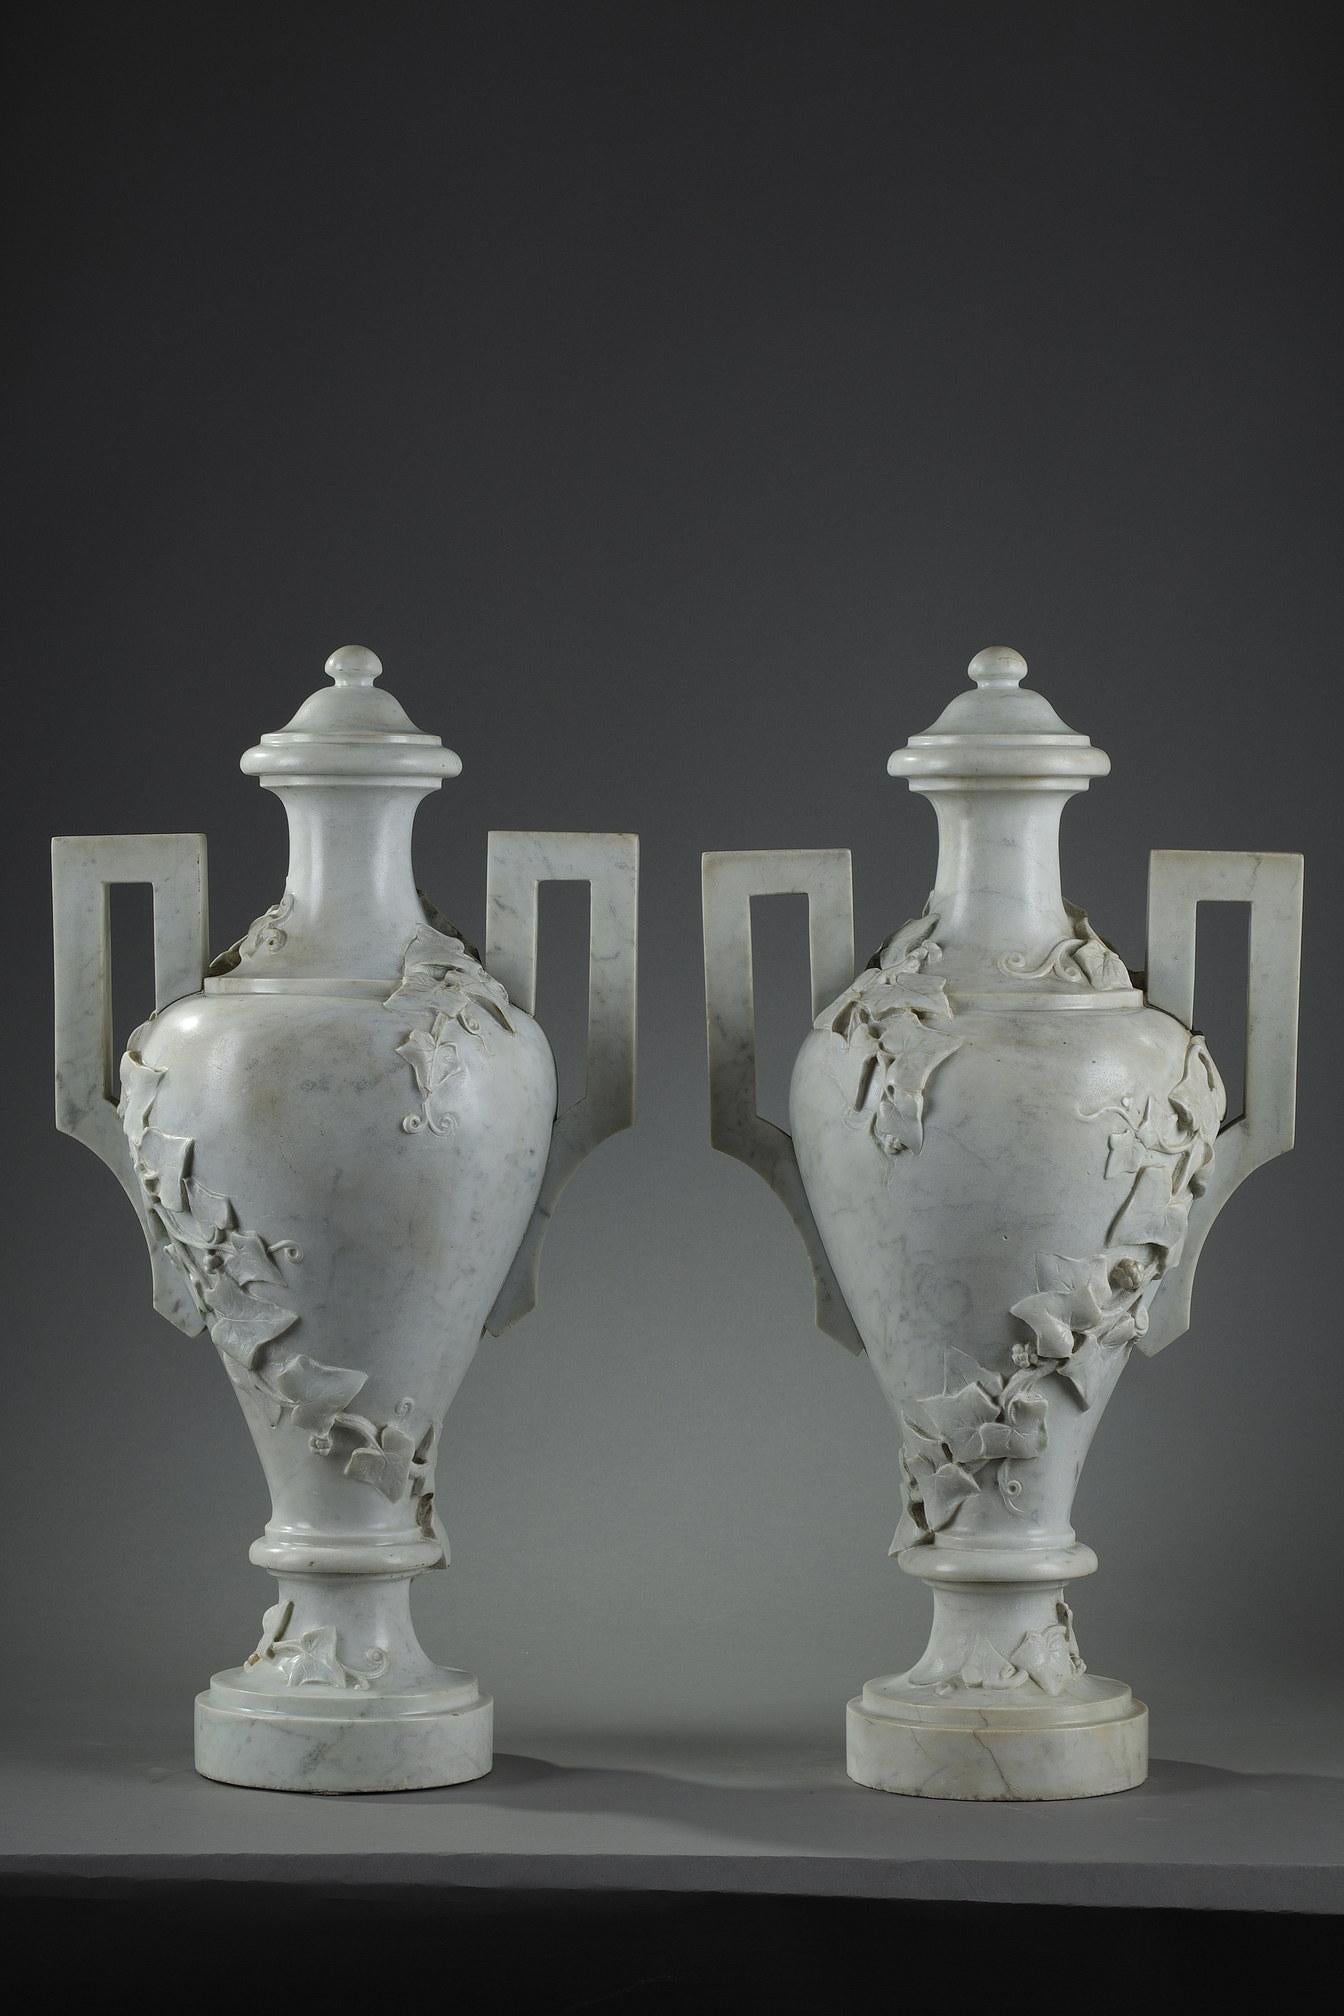 Große, abgedeckte Vasen mit Fuß aus weißem Carrara-Marmor in Form einer griechischen Amphore, geschnitzt mit kletterndem Efeu. Die Form der Griffe hat eine geometrische Form und zeigt den Geschmack des antiken Griechenlands im 18. Jahrhundert.